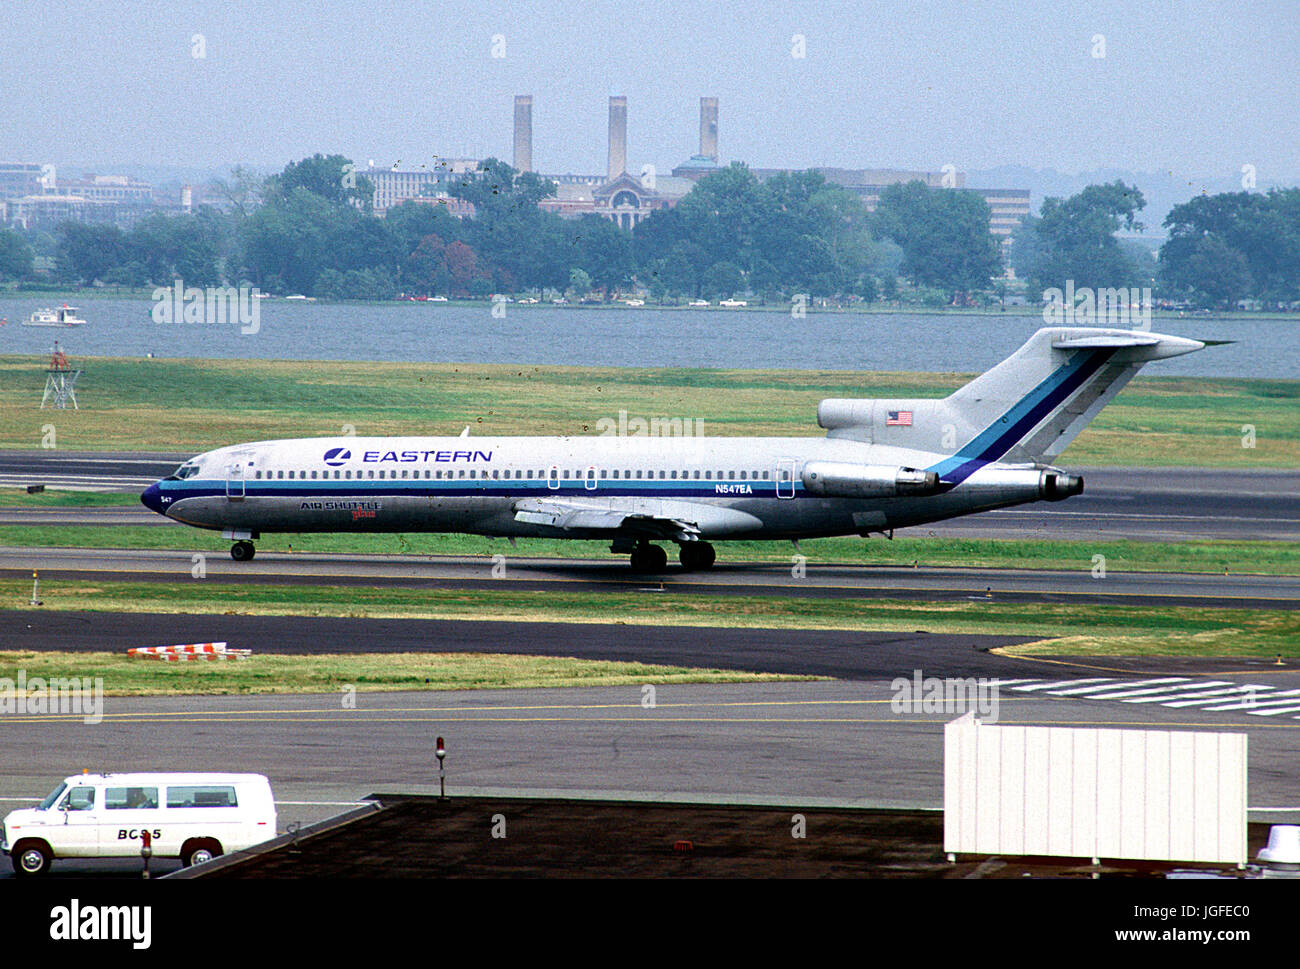 Washington, D.C. - (FILE) -- Operazioni di volo all'Aeroporto Nazionale Ronald Reagan di Washington, D.C. Domenica, 2 agosto 1987 dalla metropolitana di piattaforma. Il velivolo raffigurato appartiene a una compagnia aerea che non è più in funzione. La Eastern Air Lines, aeromobili Boeing 727, era volato come parte del loro servizio navetta tra Washington e New York. Nel 1989, la navetta orientale è stato venduto a Donald Trump, chi ha rinominato iil Trump Shuttle. Esso ha operato fino ad aprile 1992 quando è stata acquisita da US Airways. .Credito: Ron Sachs / CNP/MediaPunch Foto Stock